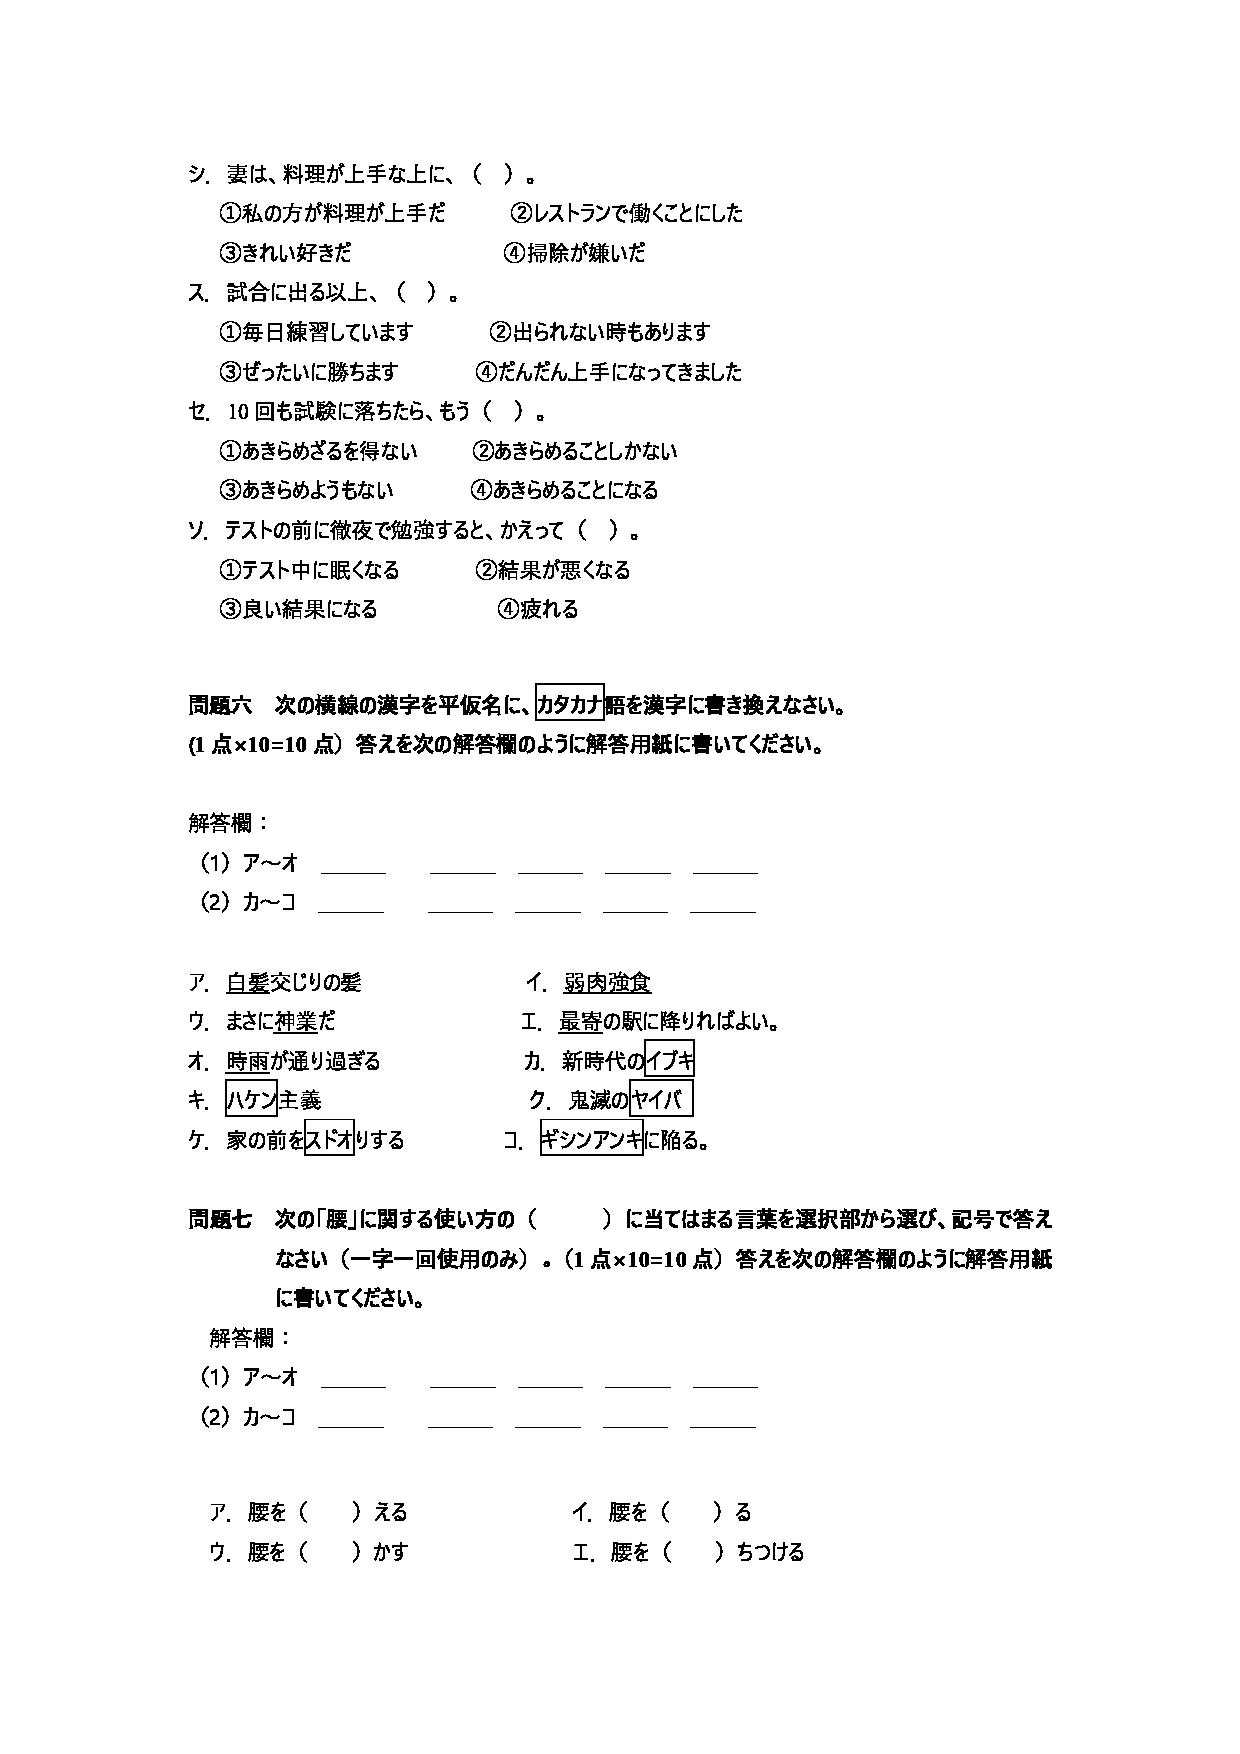 2023考研大纲：天津外国语大学2023年考研 050205 日语语言文学 考试大纲第7页